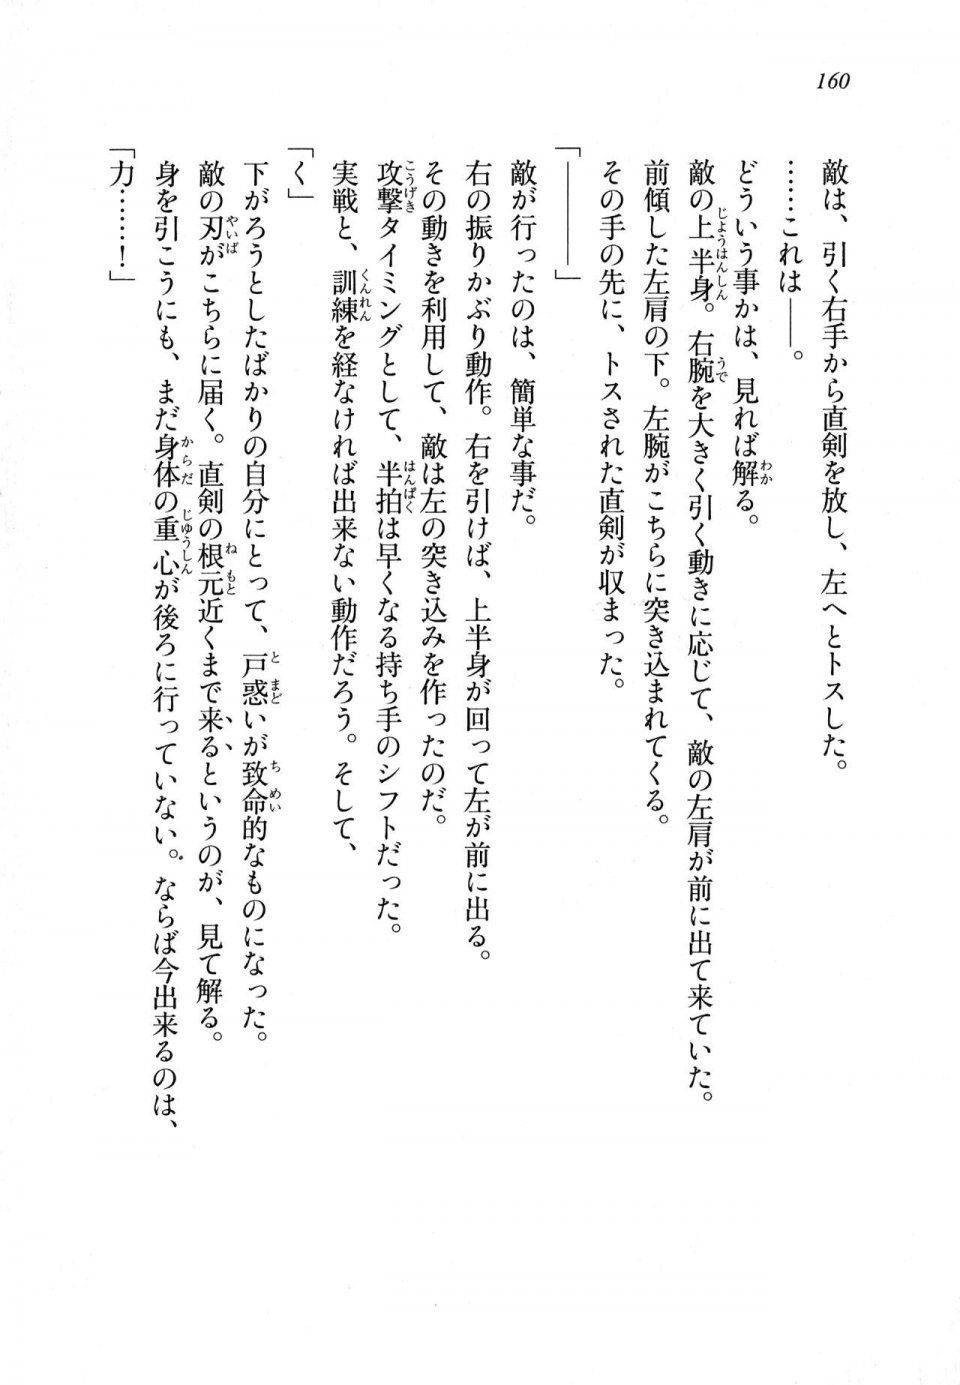 Kyoukai Senjou no Horizon LN Sidestory Vol 1 - Photo #158